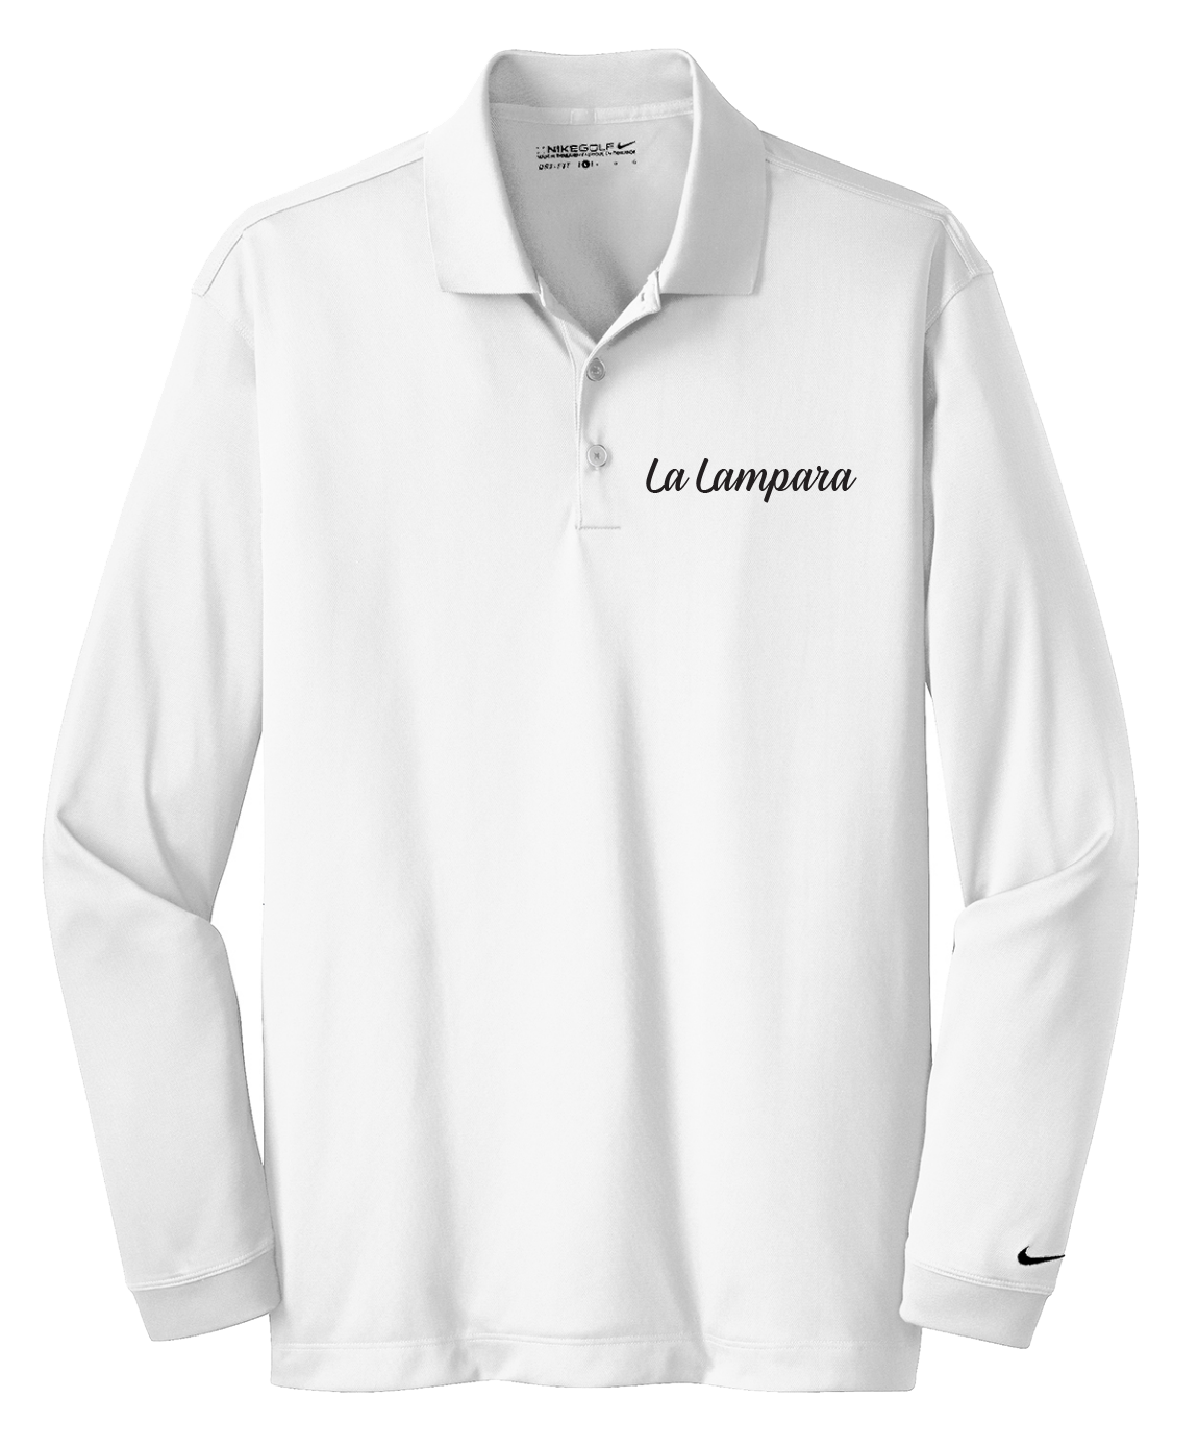 La Lampara - Mens - Nike Long Sleeve Dri-FIT Stretch Tech Polo